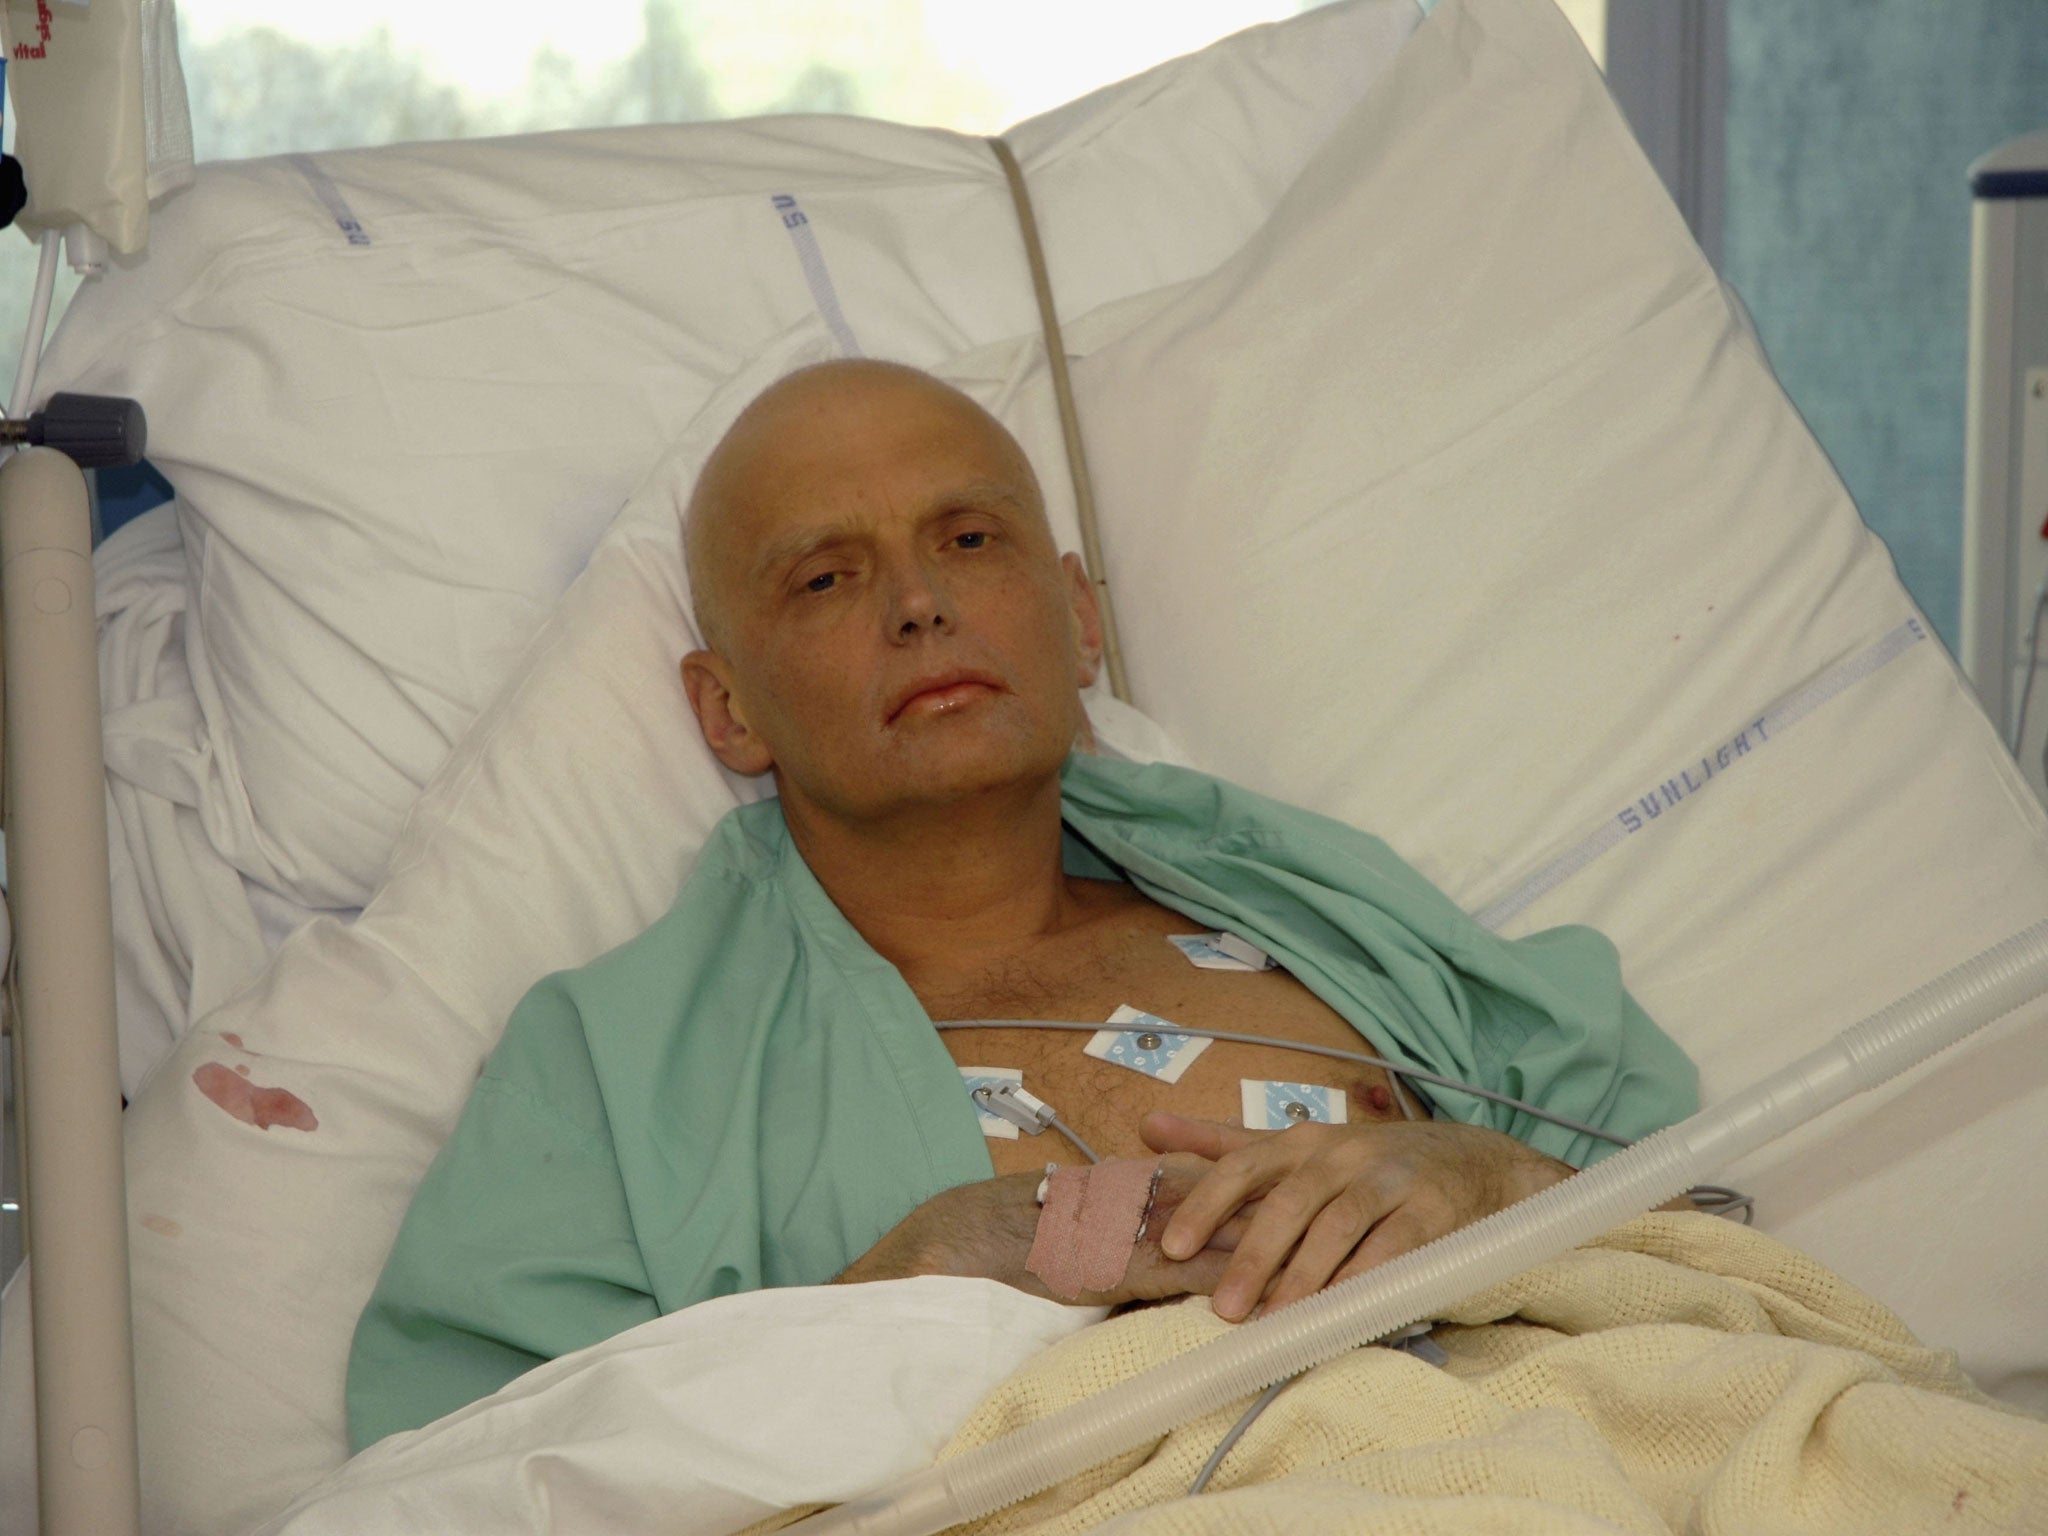 Alexander Litvinenko was poisoned with radioactive polonium